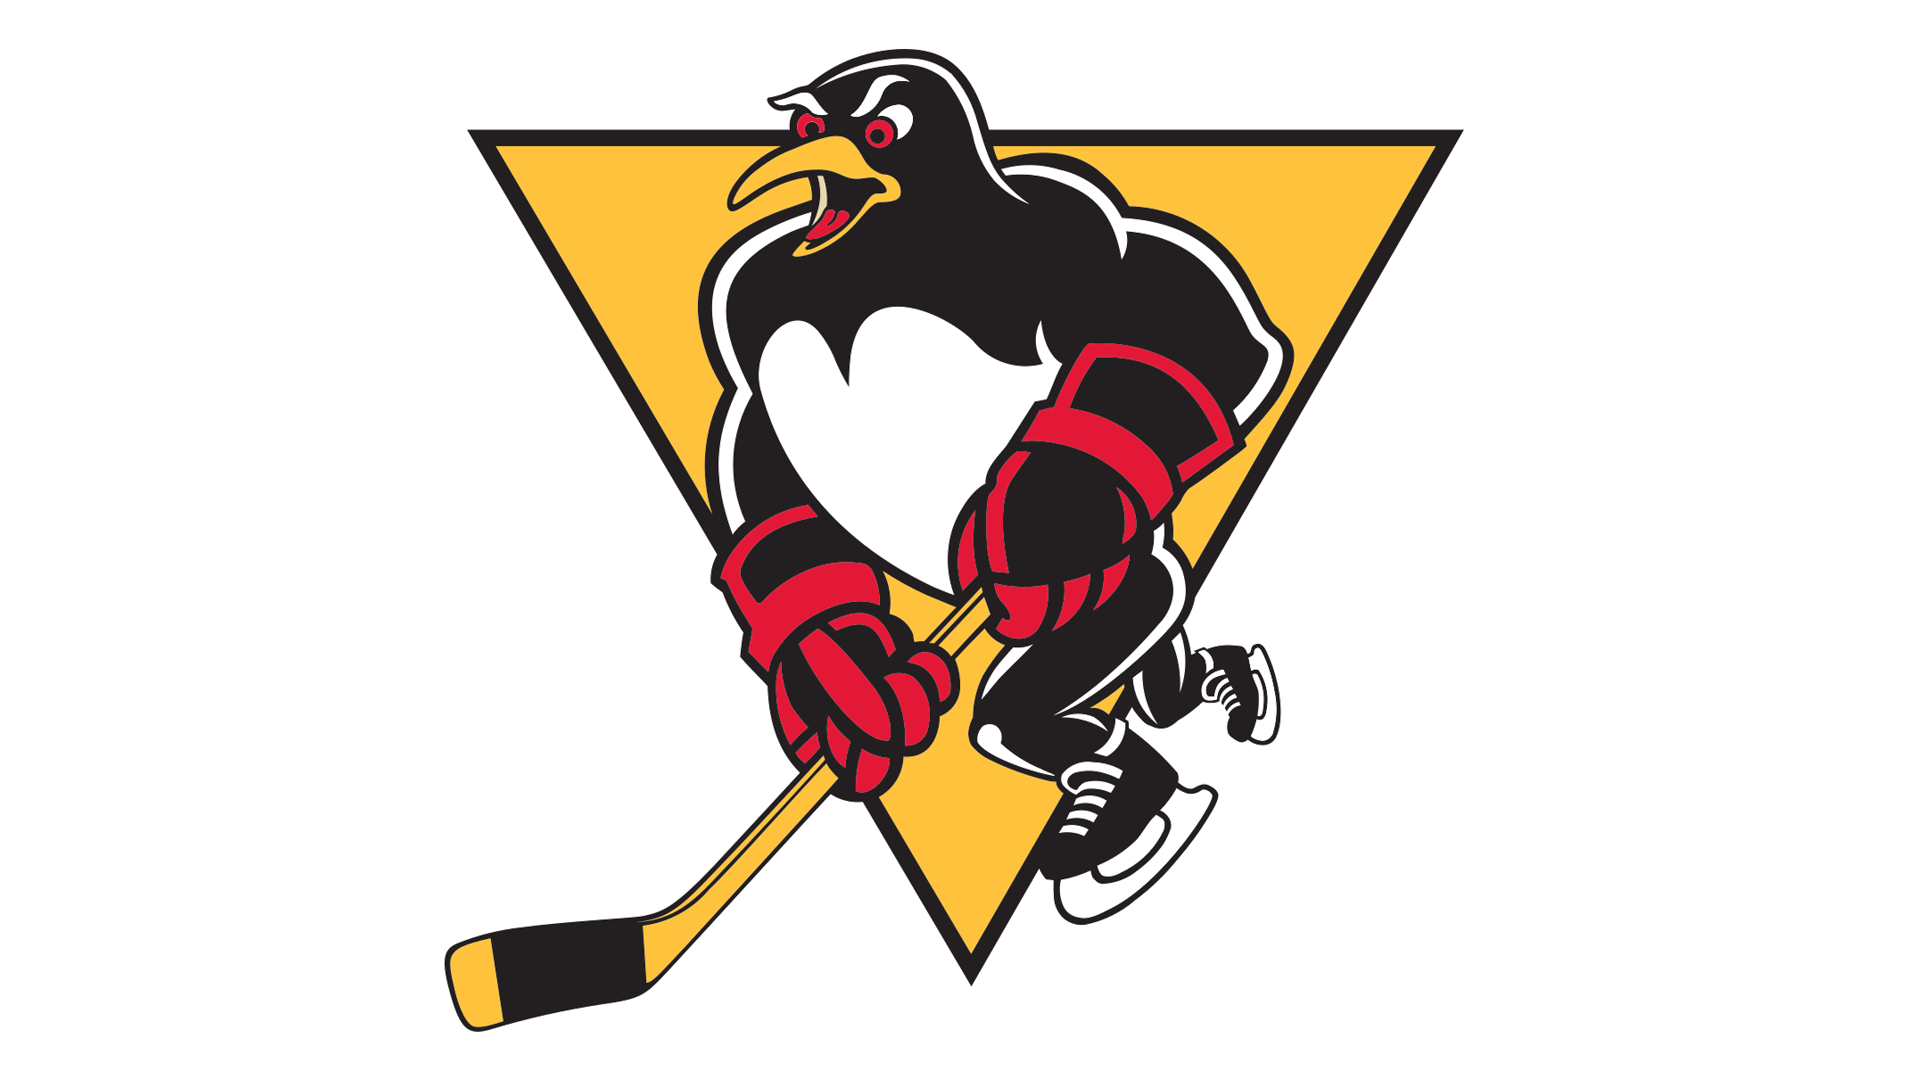 Логотипы команд нхл. Хоккейные команды НХЛ. Логотипы хоккейных команд НХЛ. НХЛ Питтсбург Пингвинз. Хоккейная команда NHL логотипы.